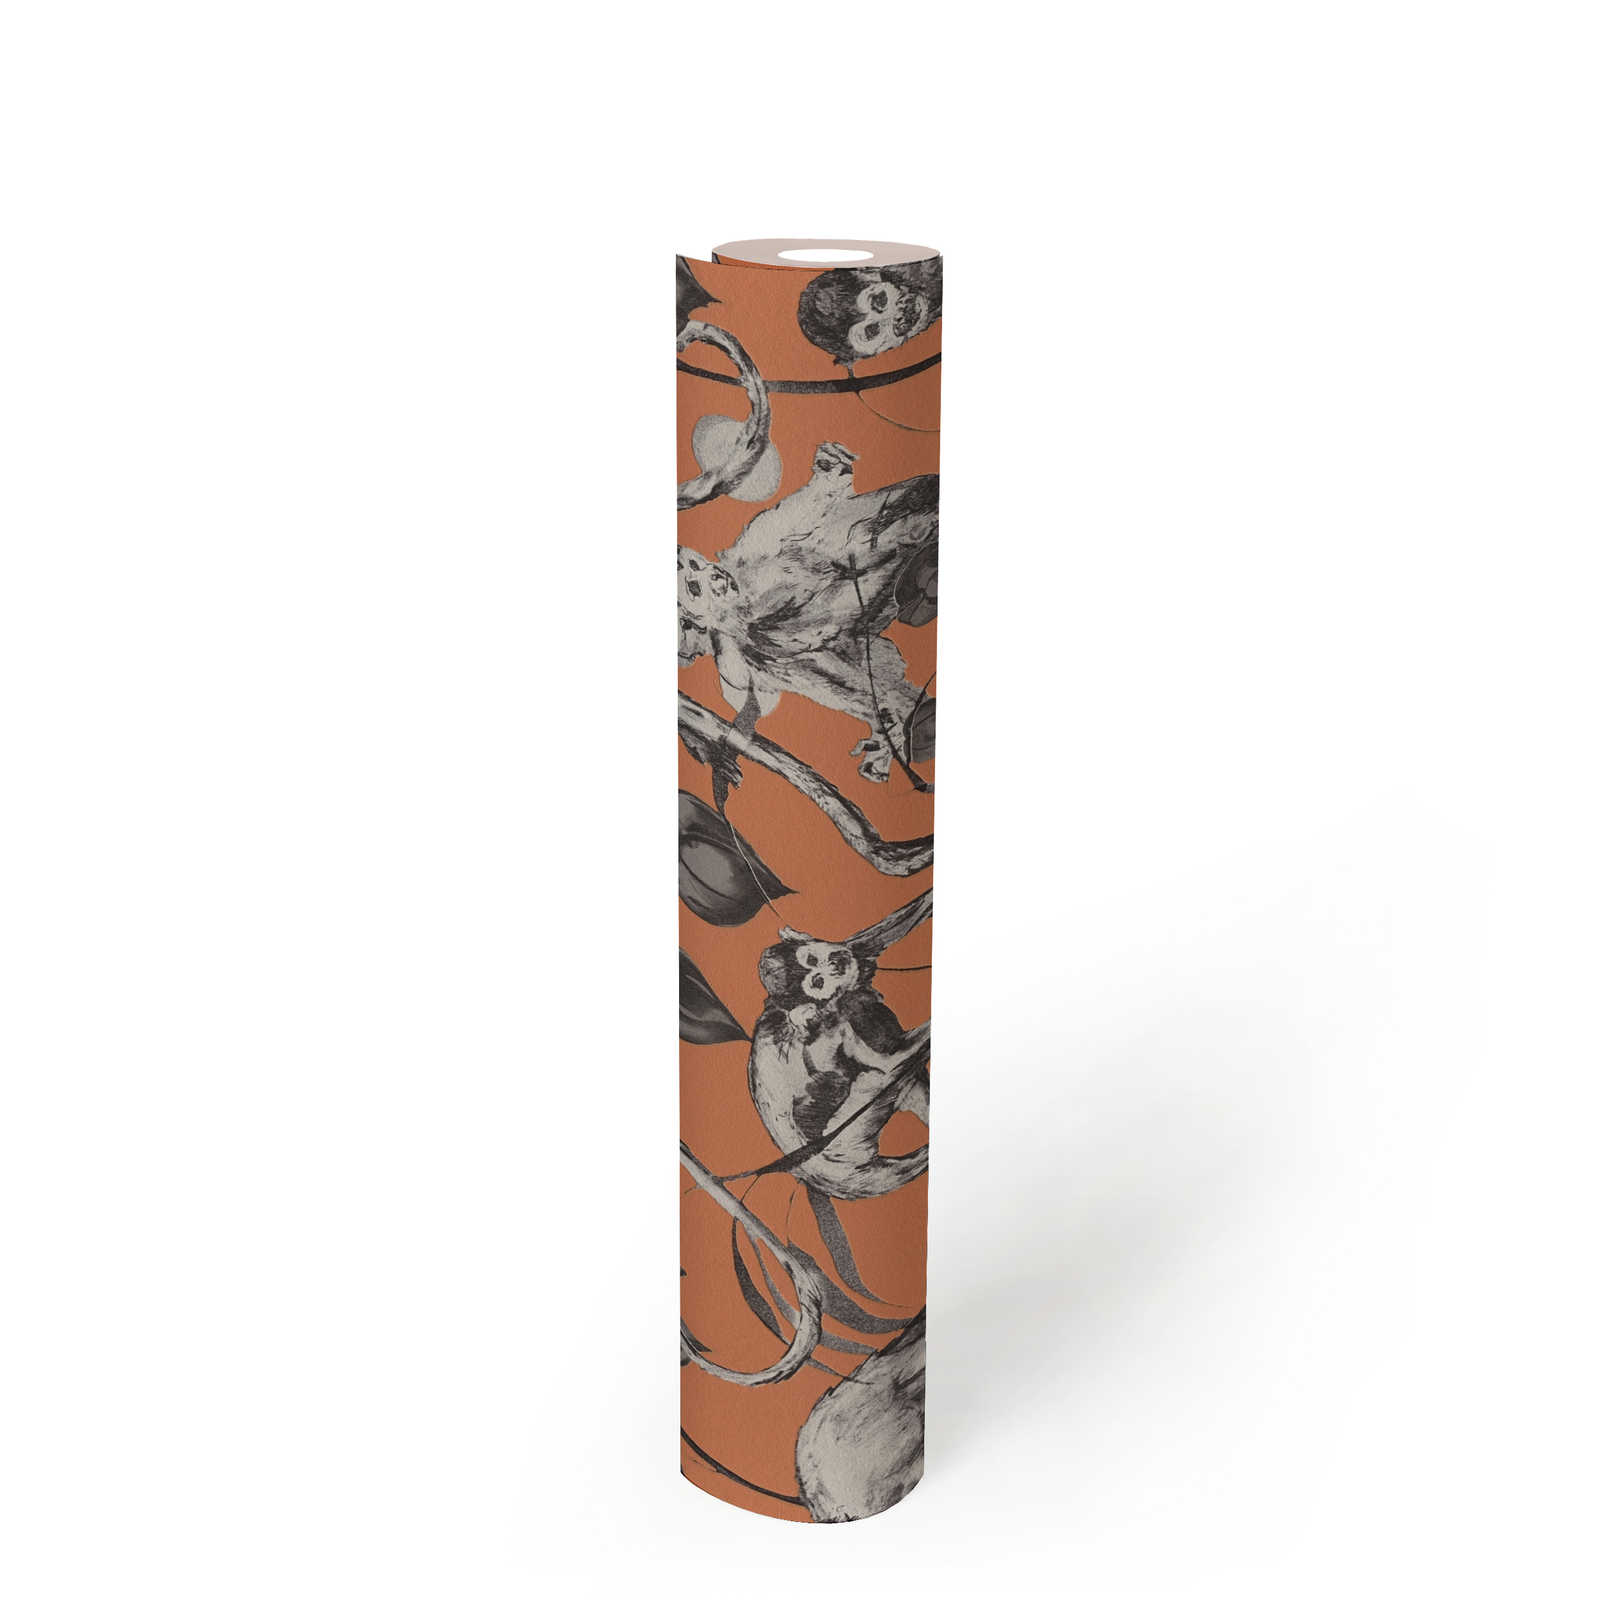             MICHALSKY behangpapier aap & jungle motief - oranje, grijs
        